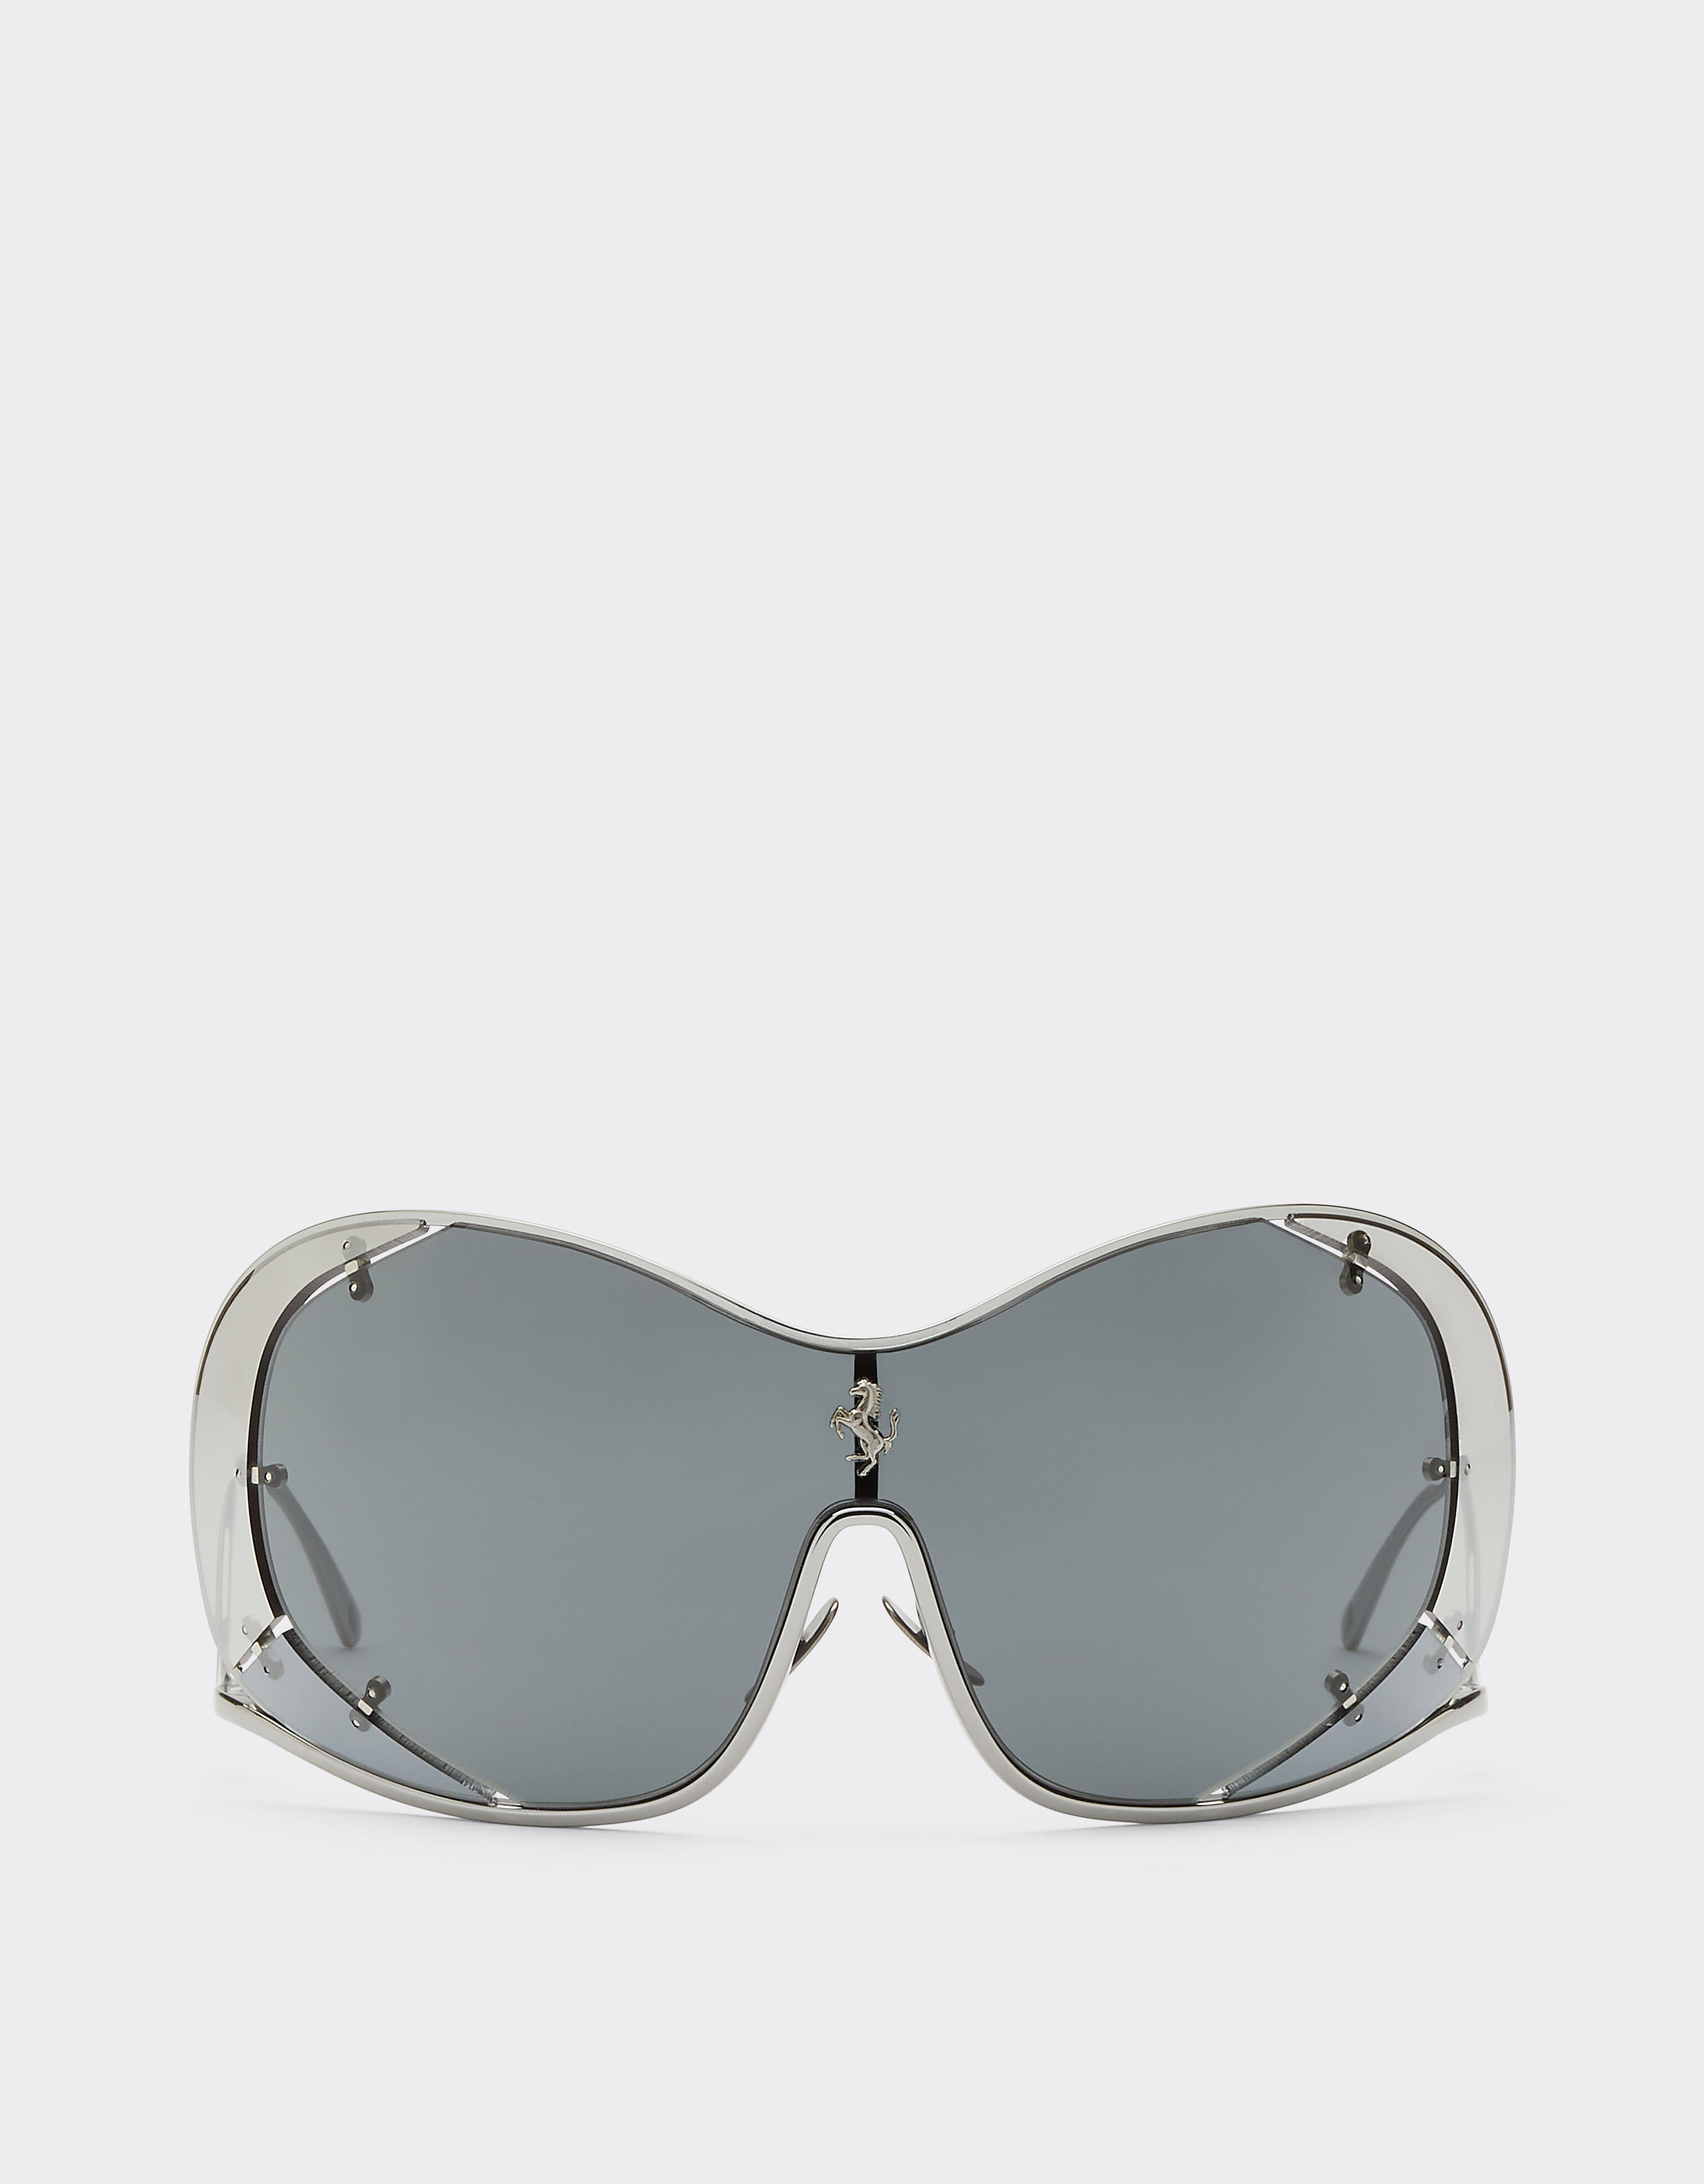 Ferrari Ferrari sunglasses with grey lenses Silver F1248f